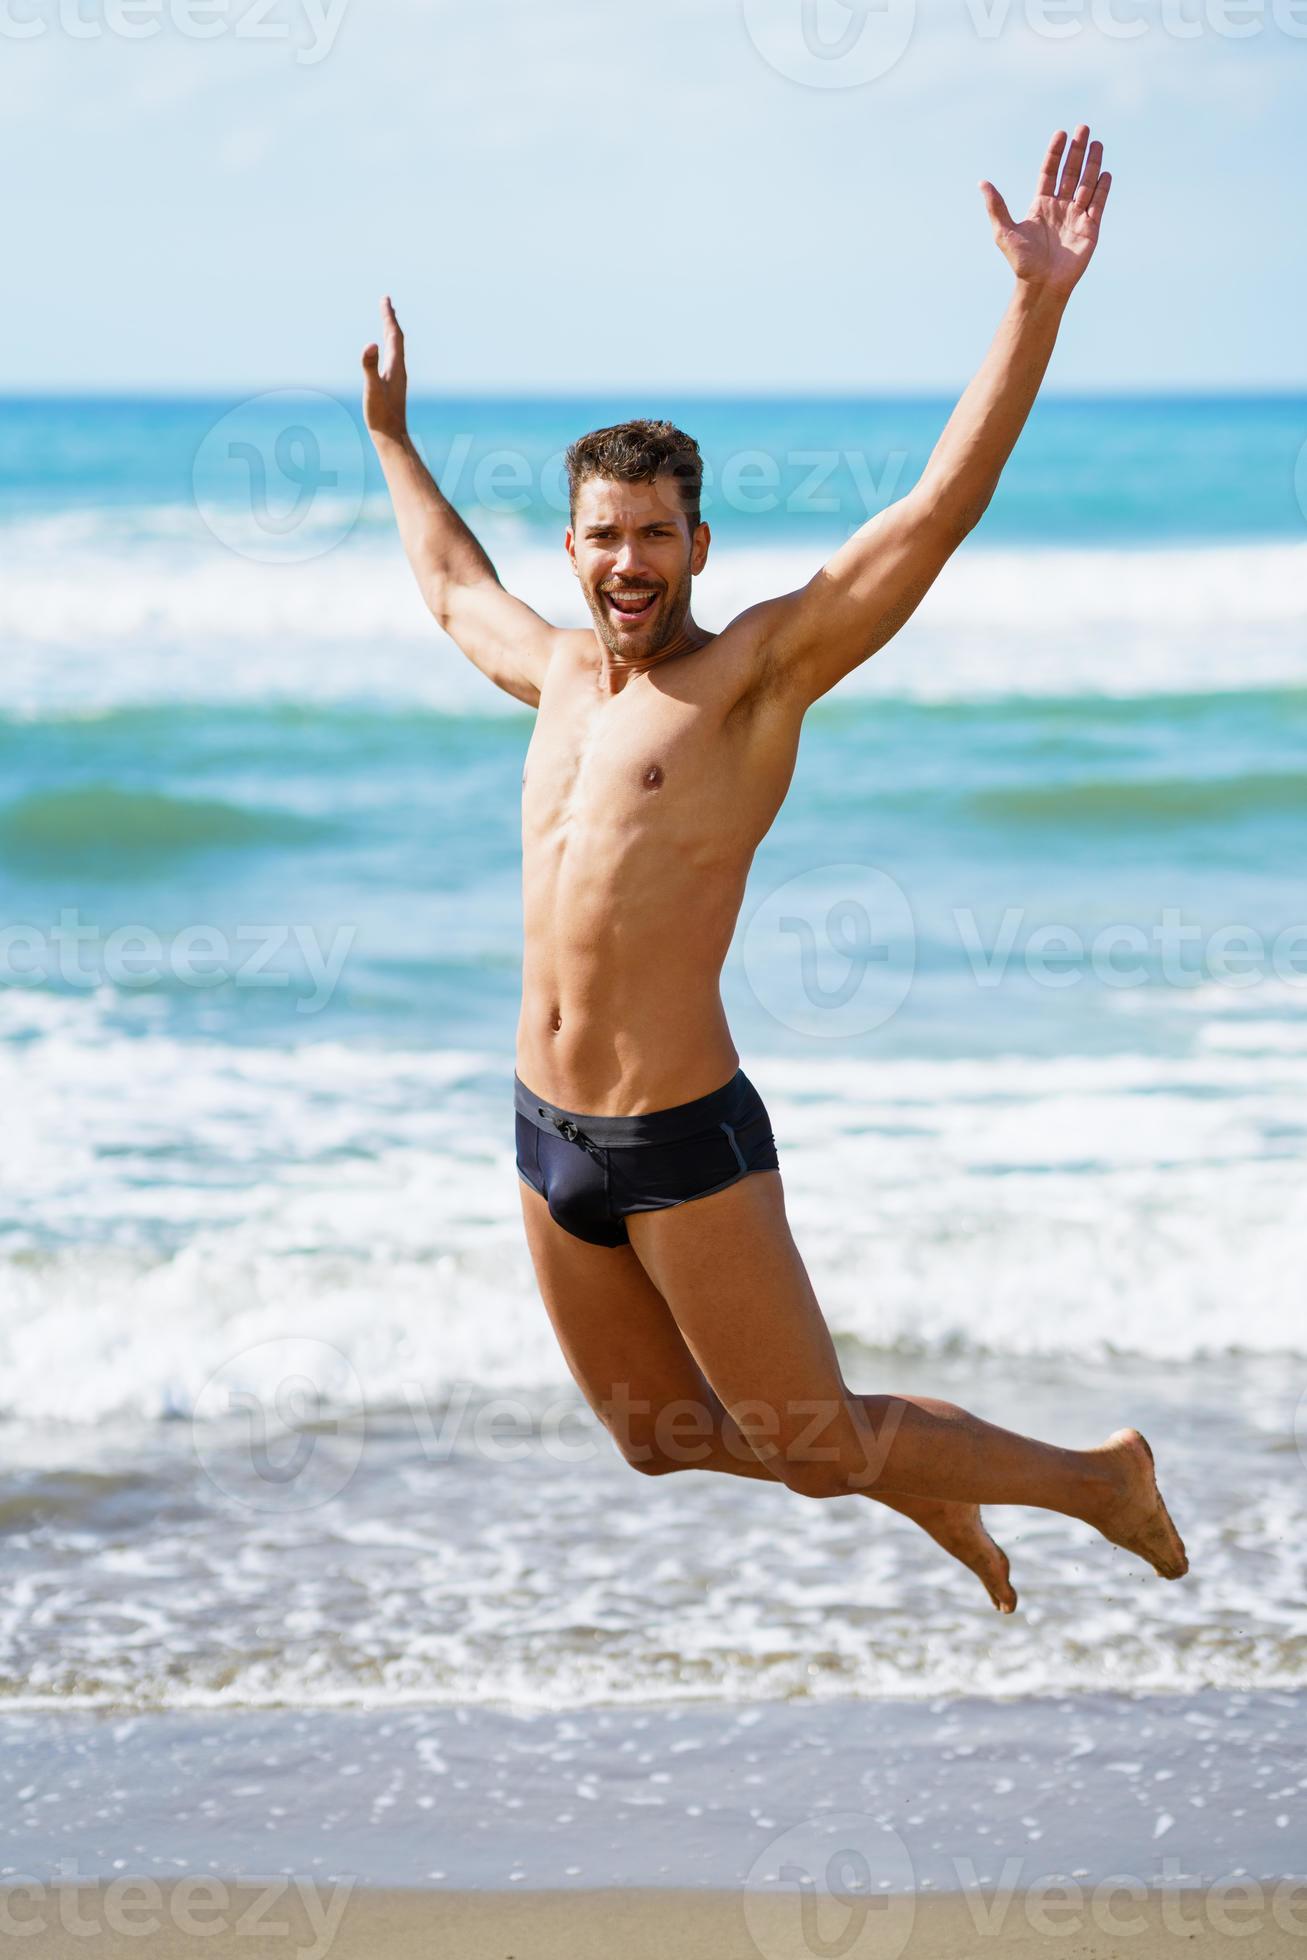 https://static.vecteezy.com/ti/photos-gratuite/p2/4241911-jeune-homme-avec-beau-corps-en-maillot-de-bain-sautant-sur-une-plage-tropicale-photo.jpg